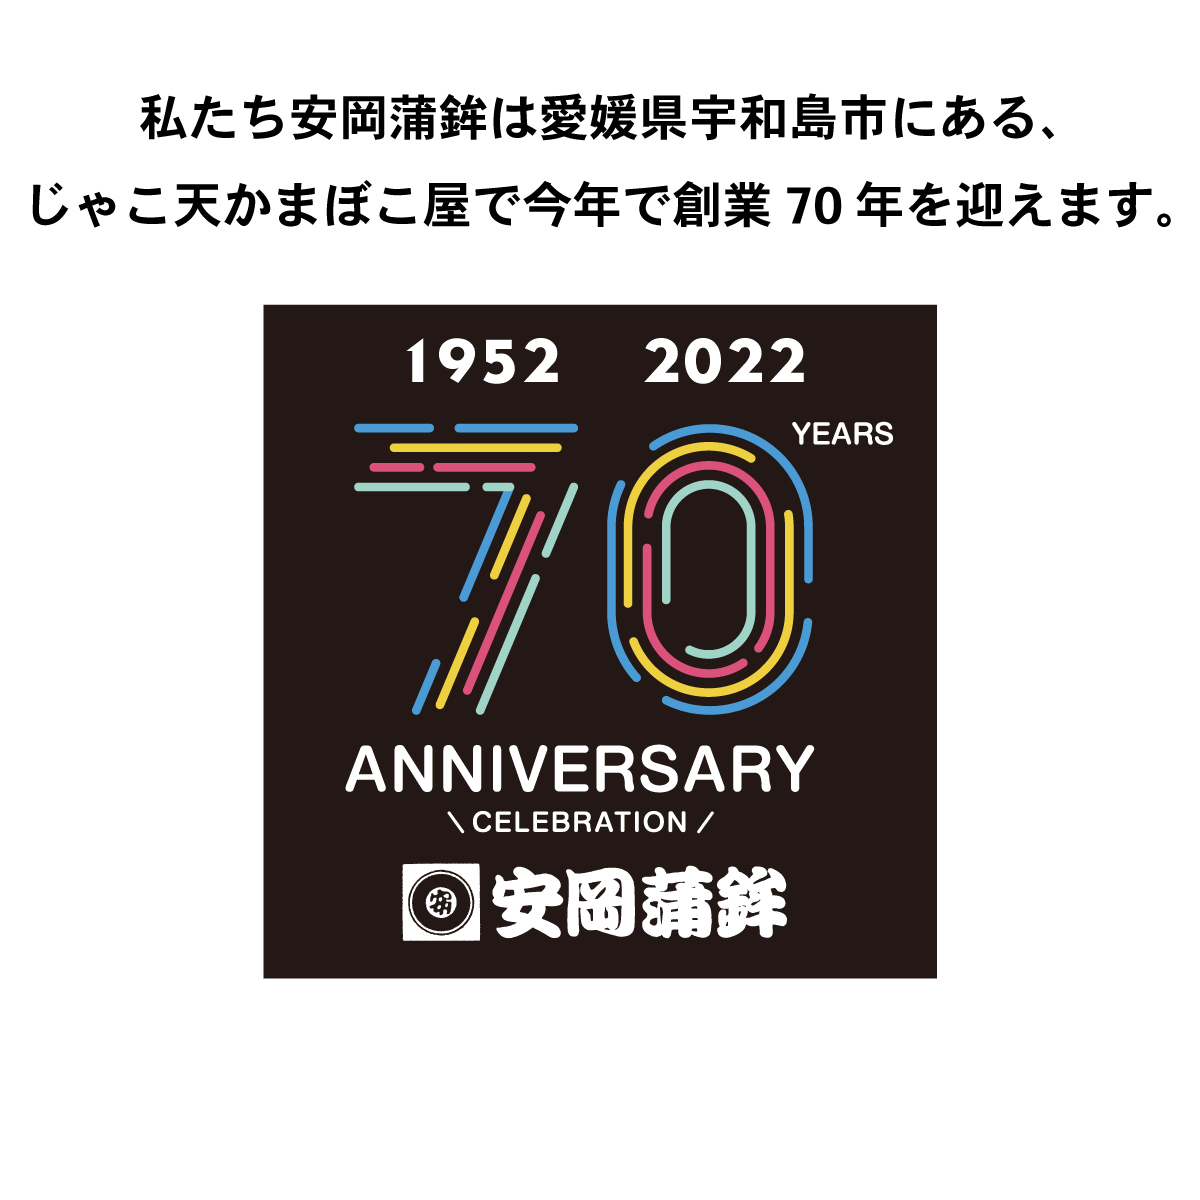 私たち安岡蒲鉾は愛媛県宇和島市にある、
じゃこ天かまぼこ屋で今年で創業70年を迎えます。